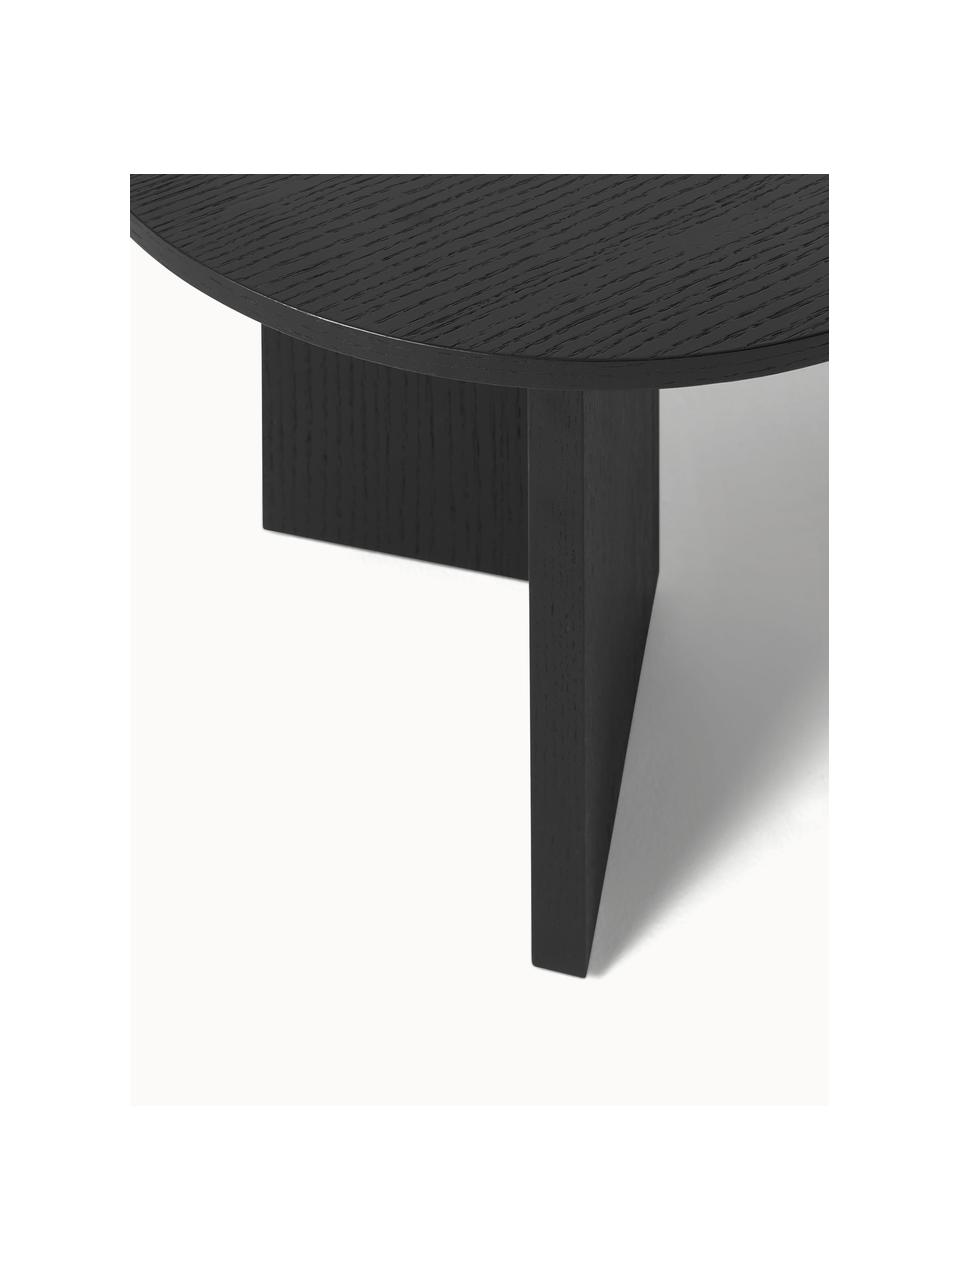 Oválný dřevěný konferenční stolek Toni, Lakovaná dřevovláknitá deska střední hustoty (MDF) s dubovou dýhou

Tento produkt je vyroben z udržitelných zdrojů dřeva s certifikací FSC®., Černá, Š 100 cm, H 55 cm